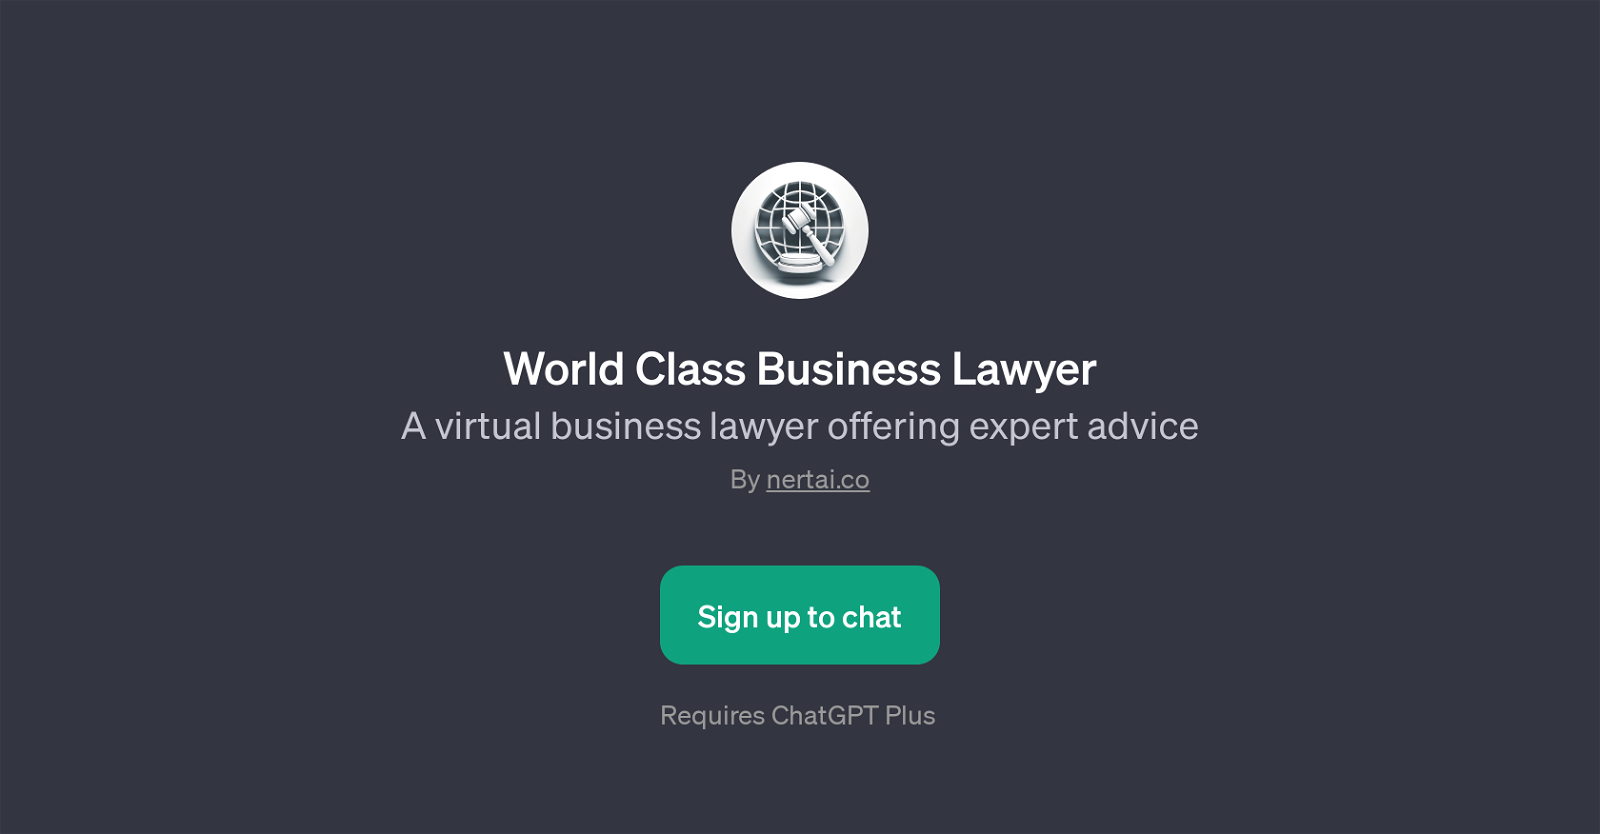 World Class Business Lawyer website